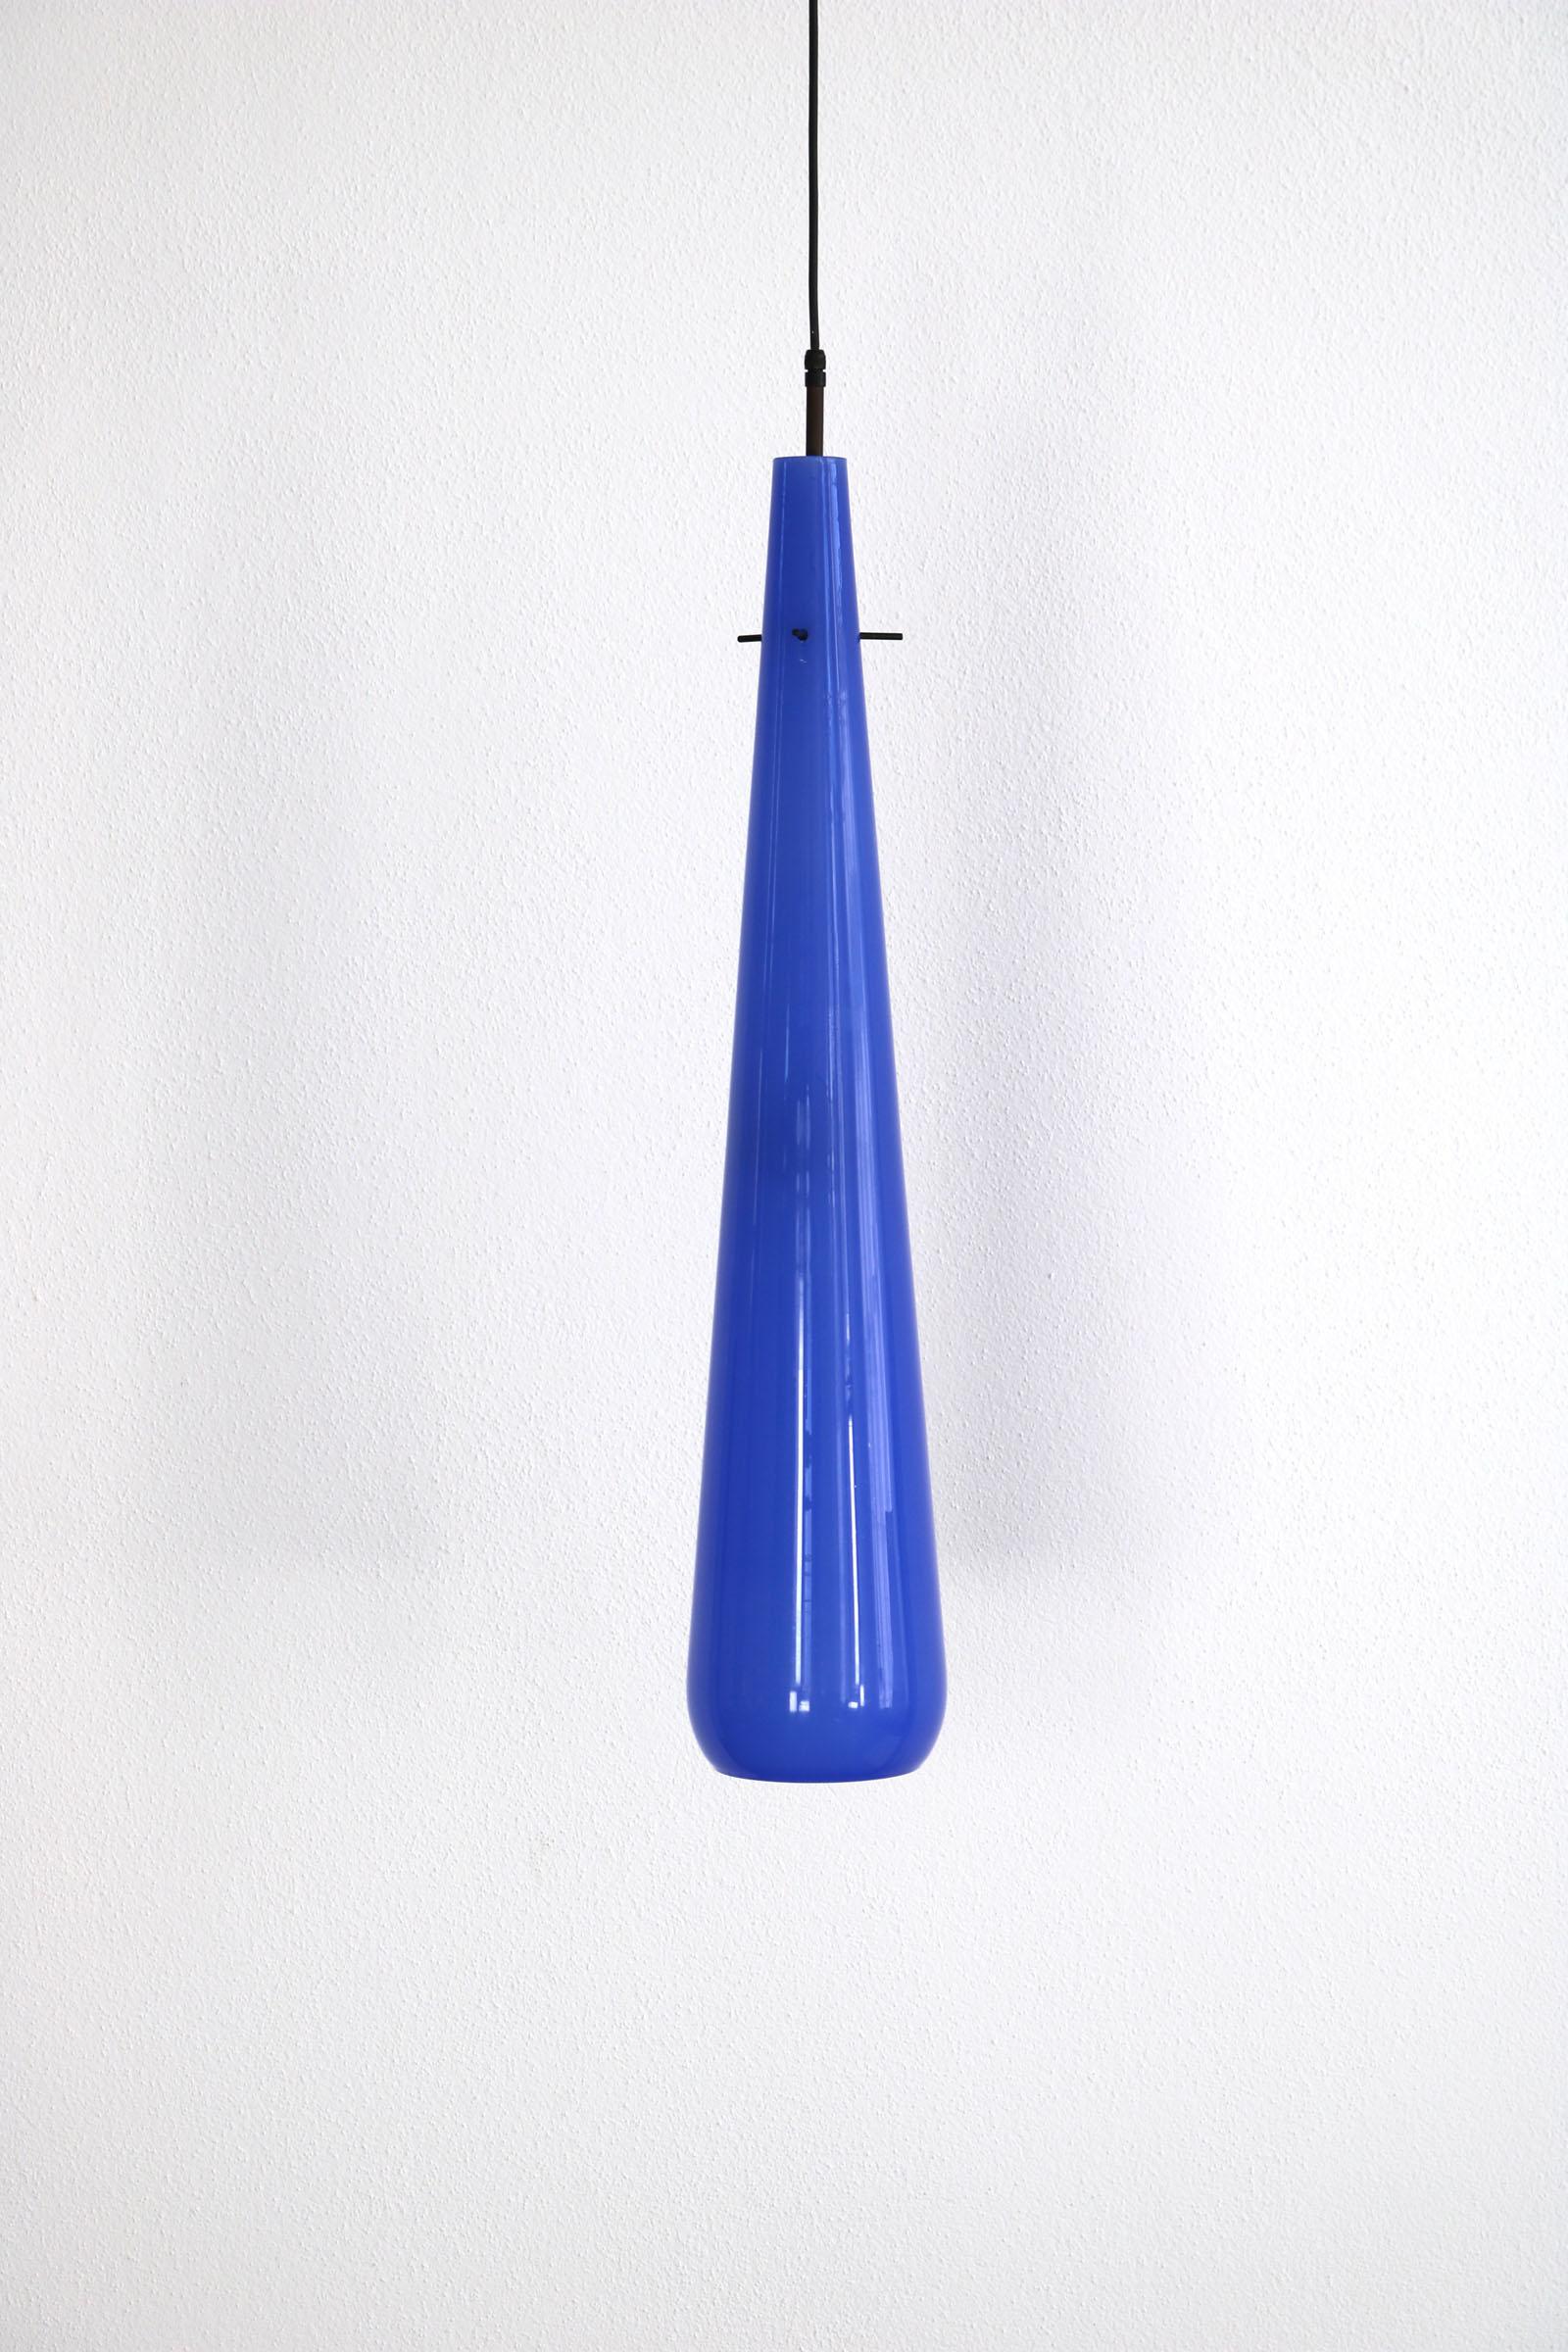 Diese italienische Glaslampe wurde von Vistosi in den 1950er Jahren hergestellt. Sie ist aus wunderschönem blauen Murano-Glas gefertigt und hängt tränenförmig von der Decke herab. Das Innere der Lampe ist weiß. Die Lampe ist in gutem